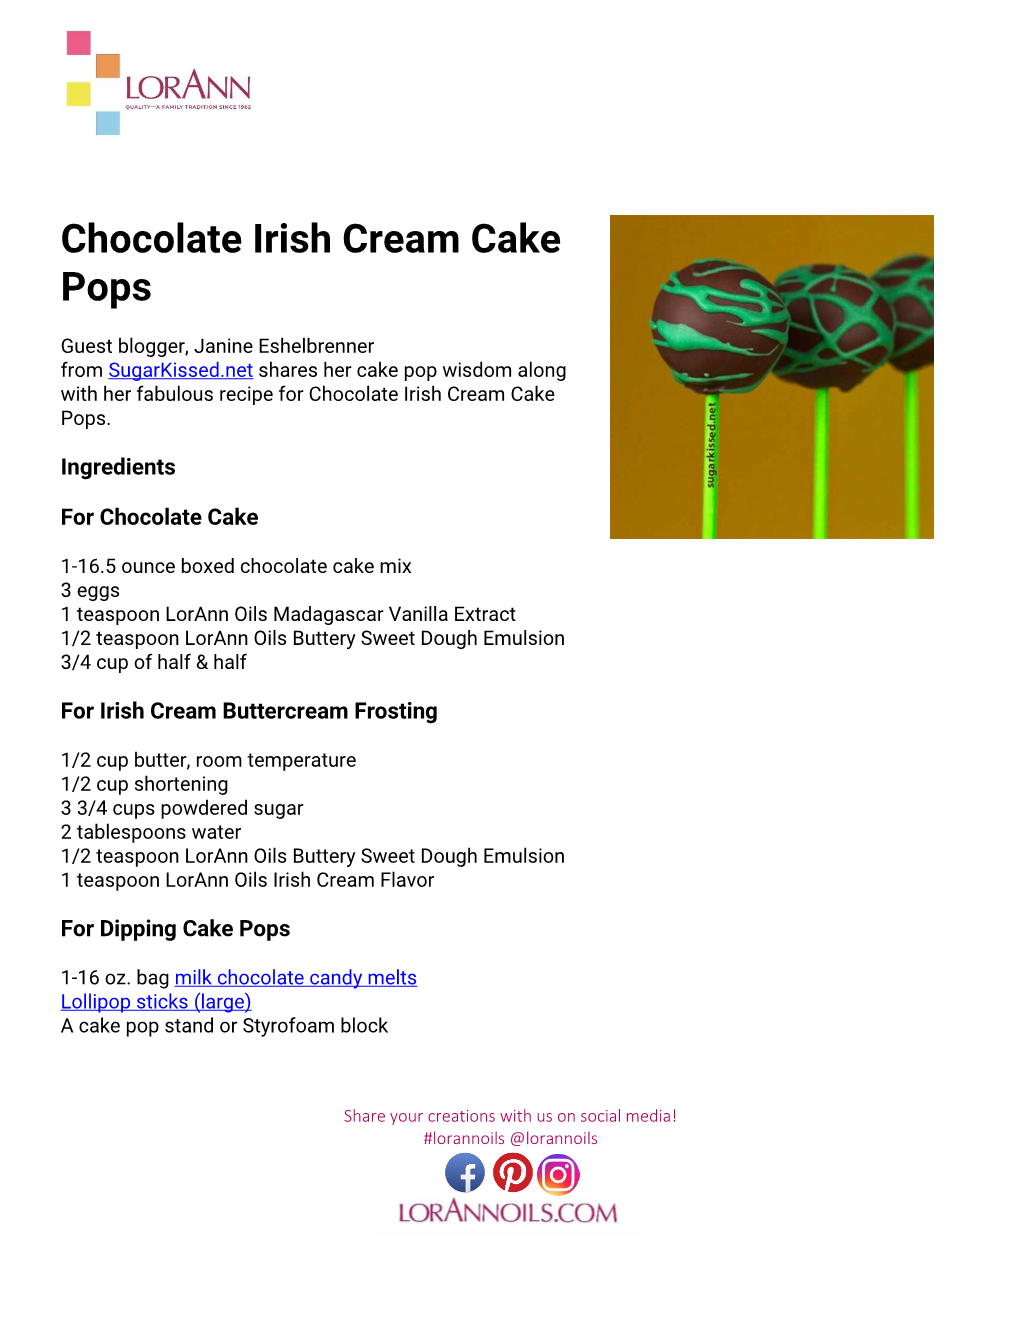 Chocolate Irish Cream Cake Pops